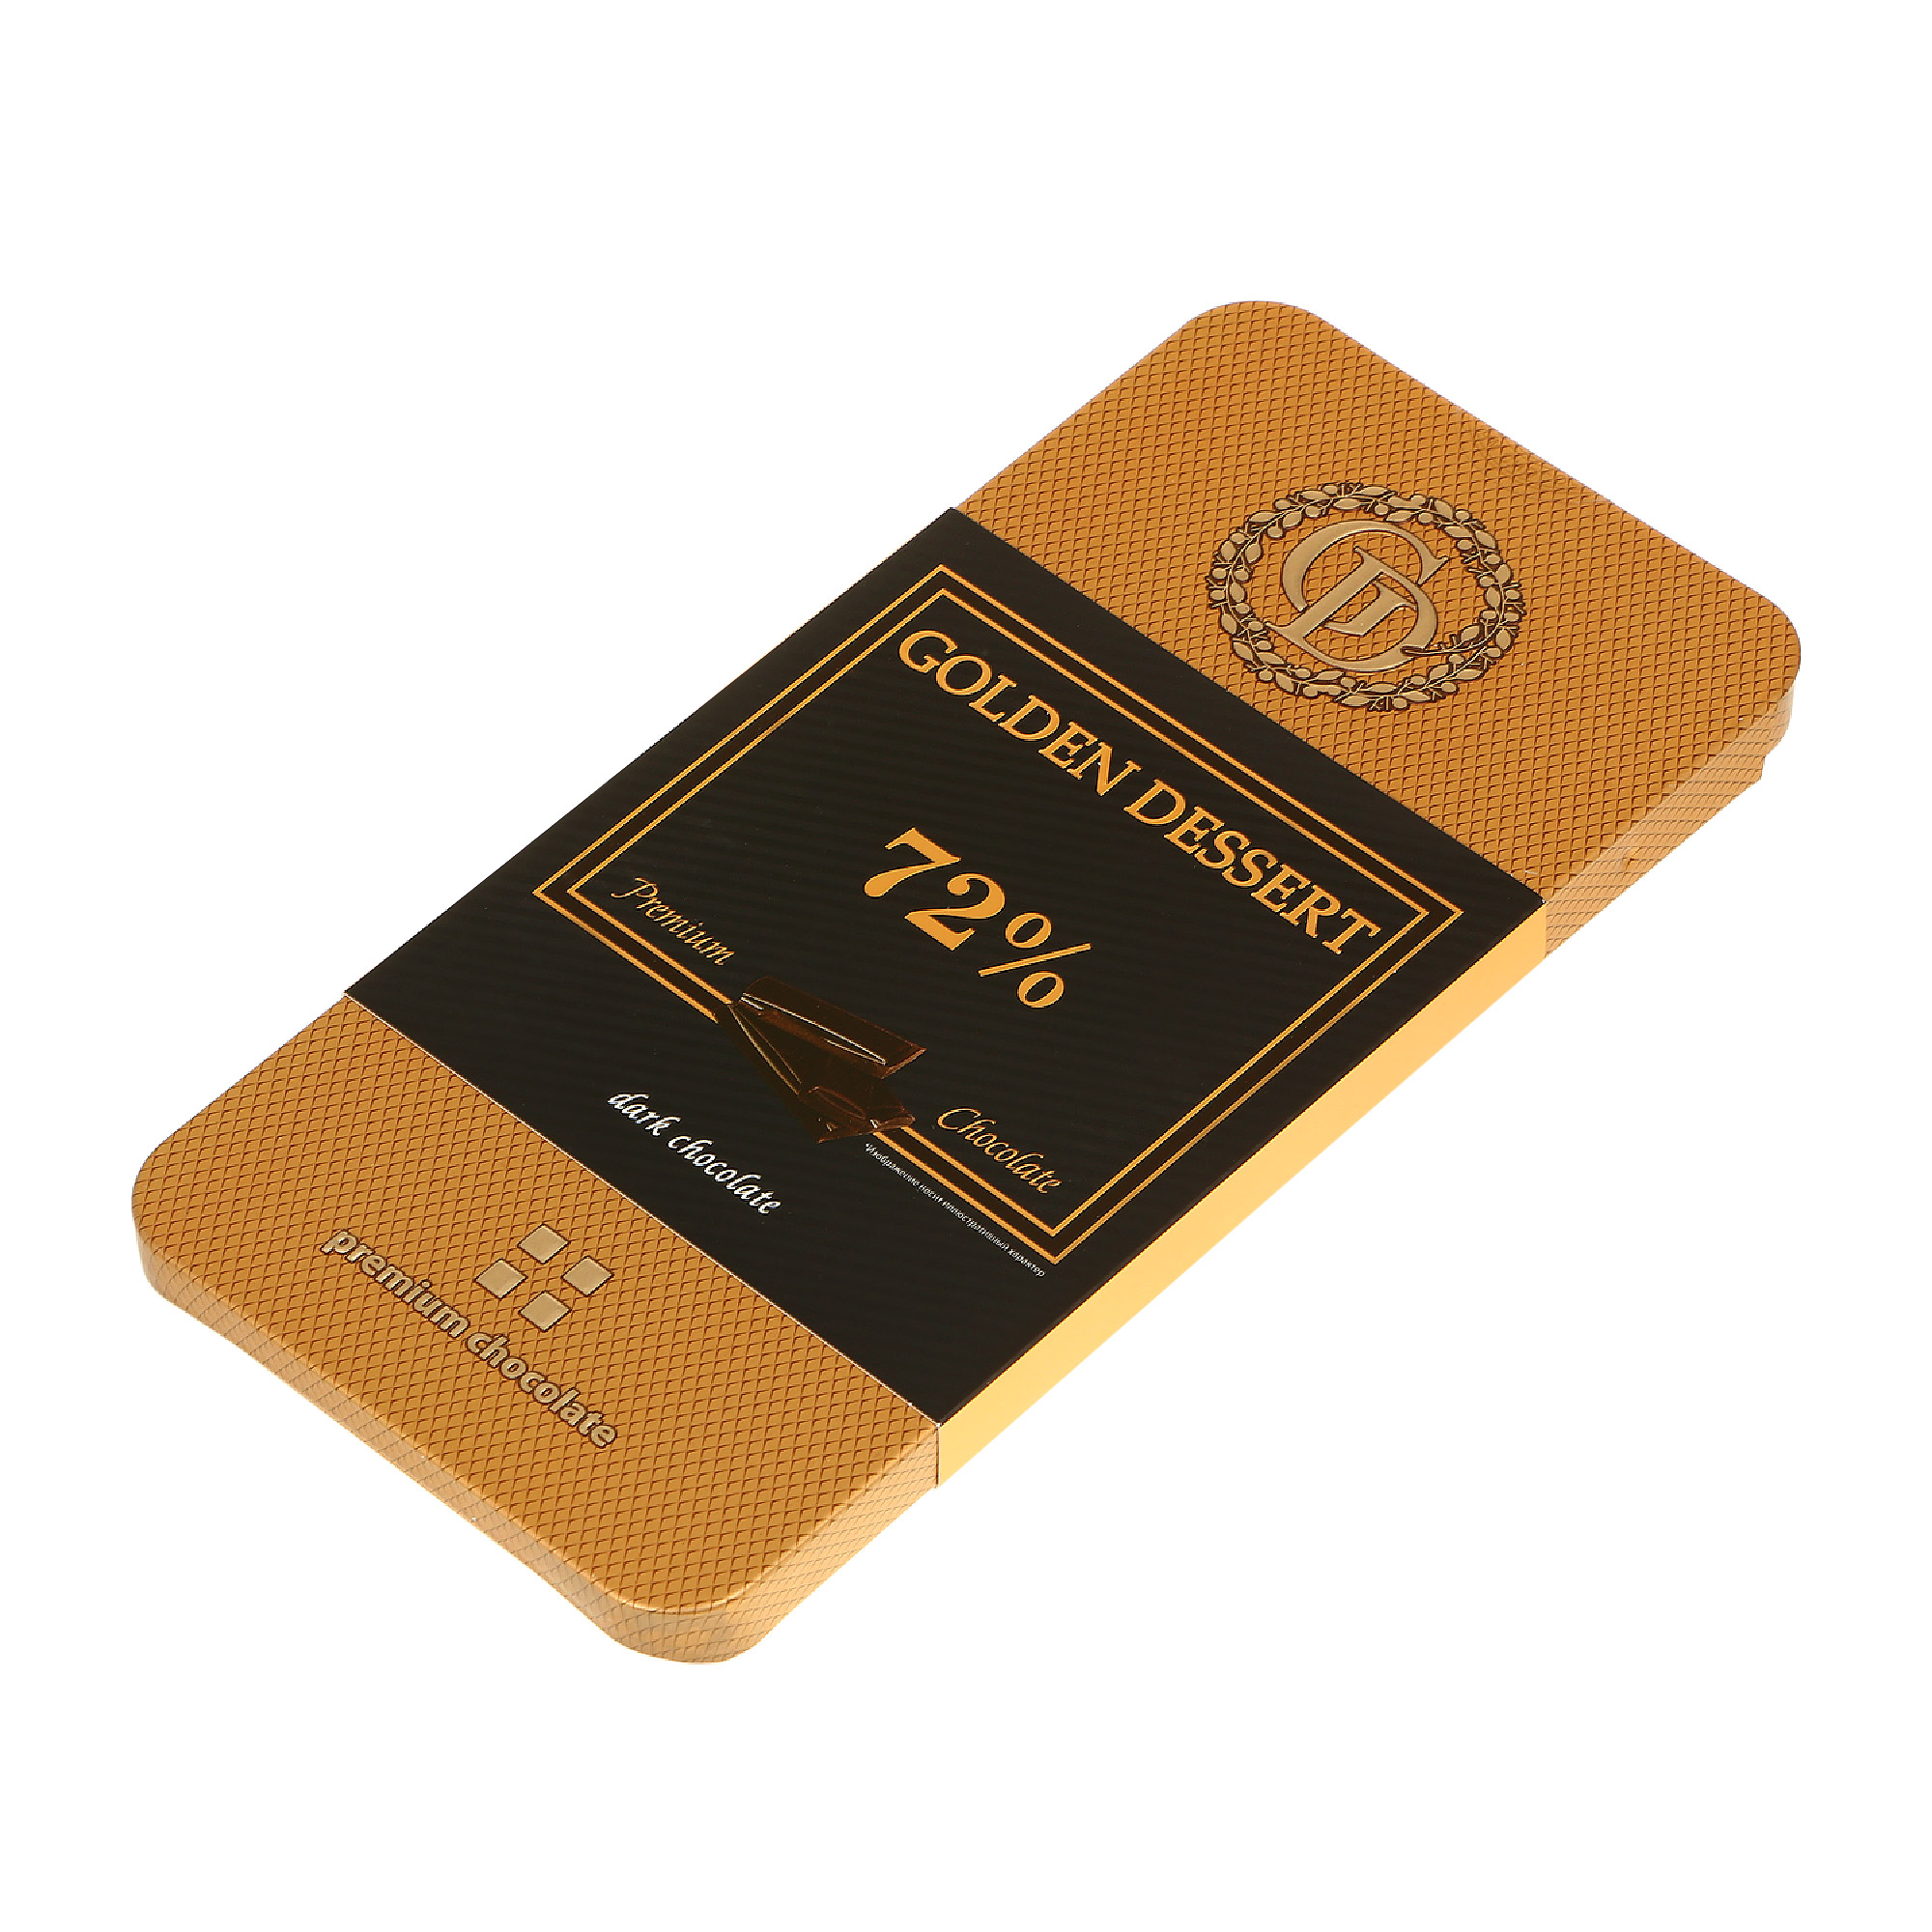 Шоколад горький GOLDEN DESSERT 72% 100 г шоколад вдохновение горький с миндалем 75% какао 100 гр